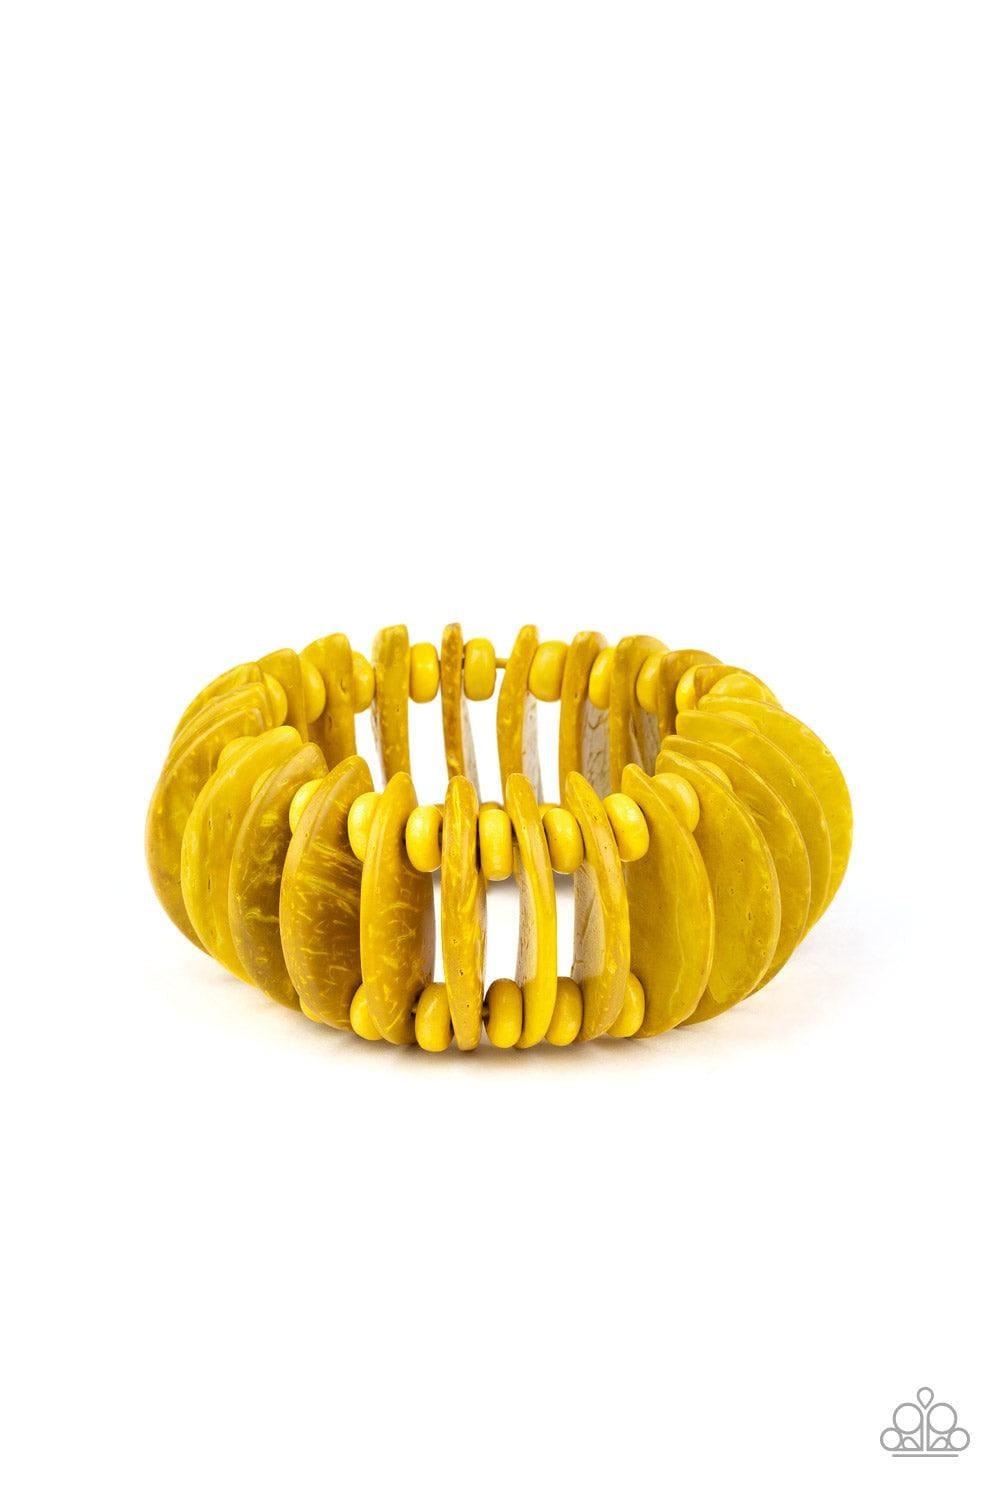 Paparazzi Accessories - Tropical Tiki Bar - Yellow Bracelet - Bling by JessieK